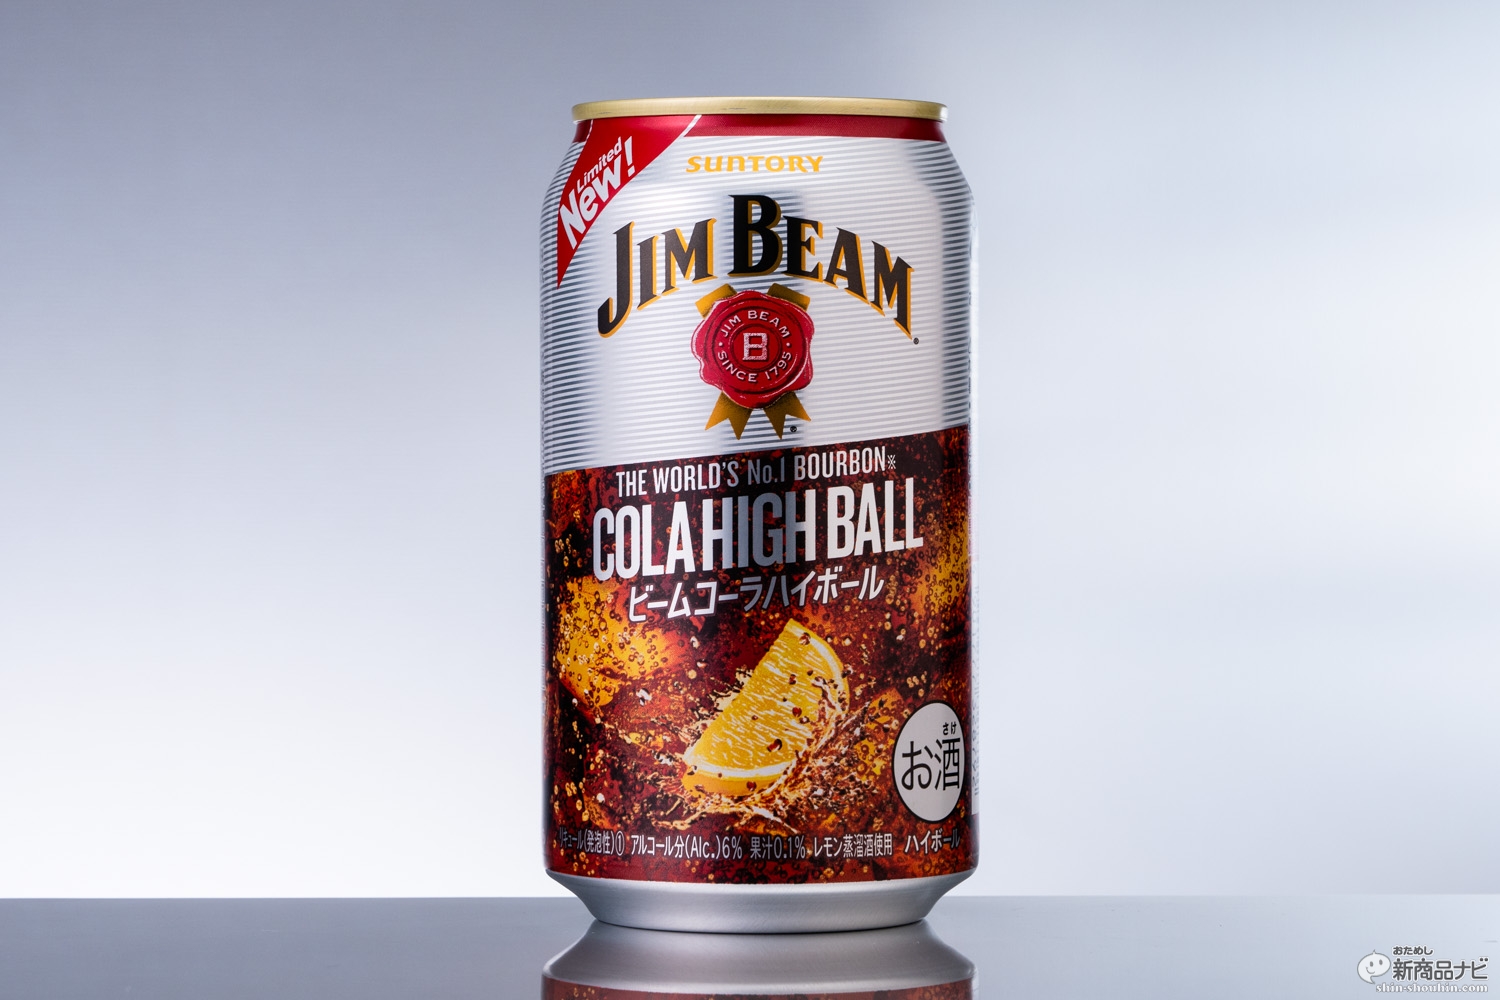 おためし新商品ナビ Blog Archive きっちり酒感の6 で大人も喜ぶバーボンコーラ ジムビーム ハイボール缶 コーラハイボール